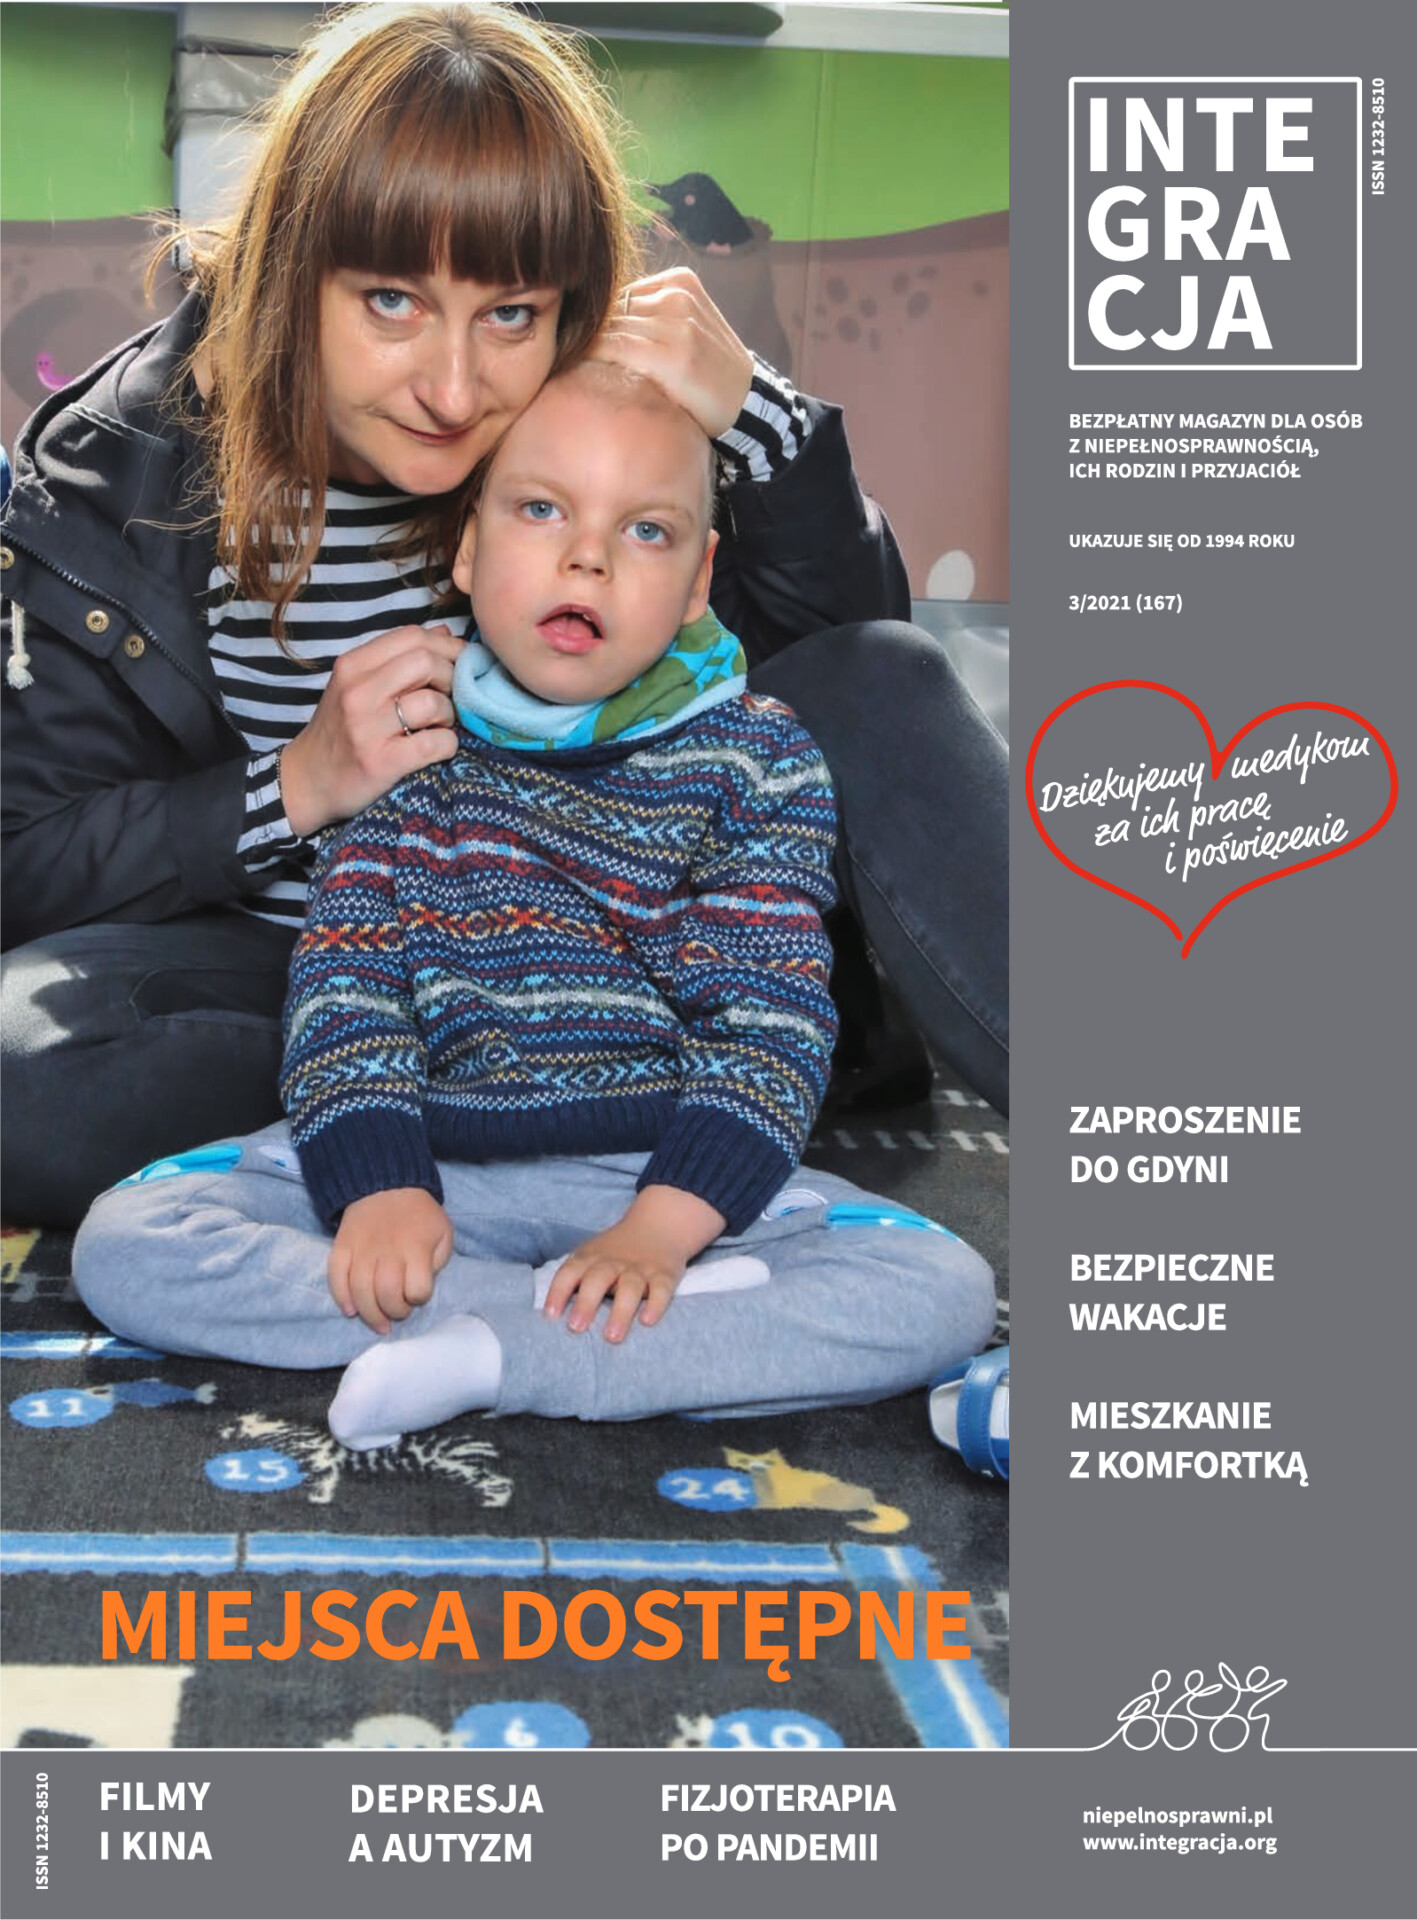 Okładka magazynu Integracja 3/2021. Mama, Agata Jabłonowska przytula swojego niepełnosprawnego synka. Kliknięcie przekierowuje do całego magazynu w PDF-ie dostępnym.